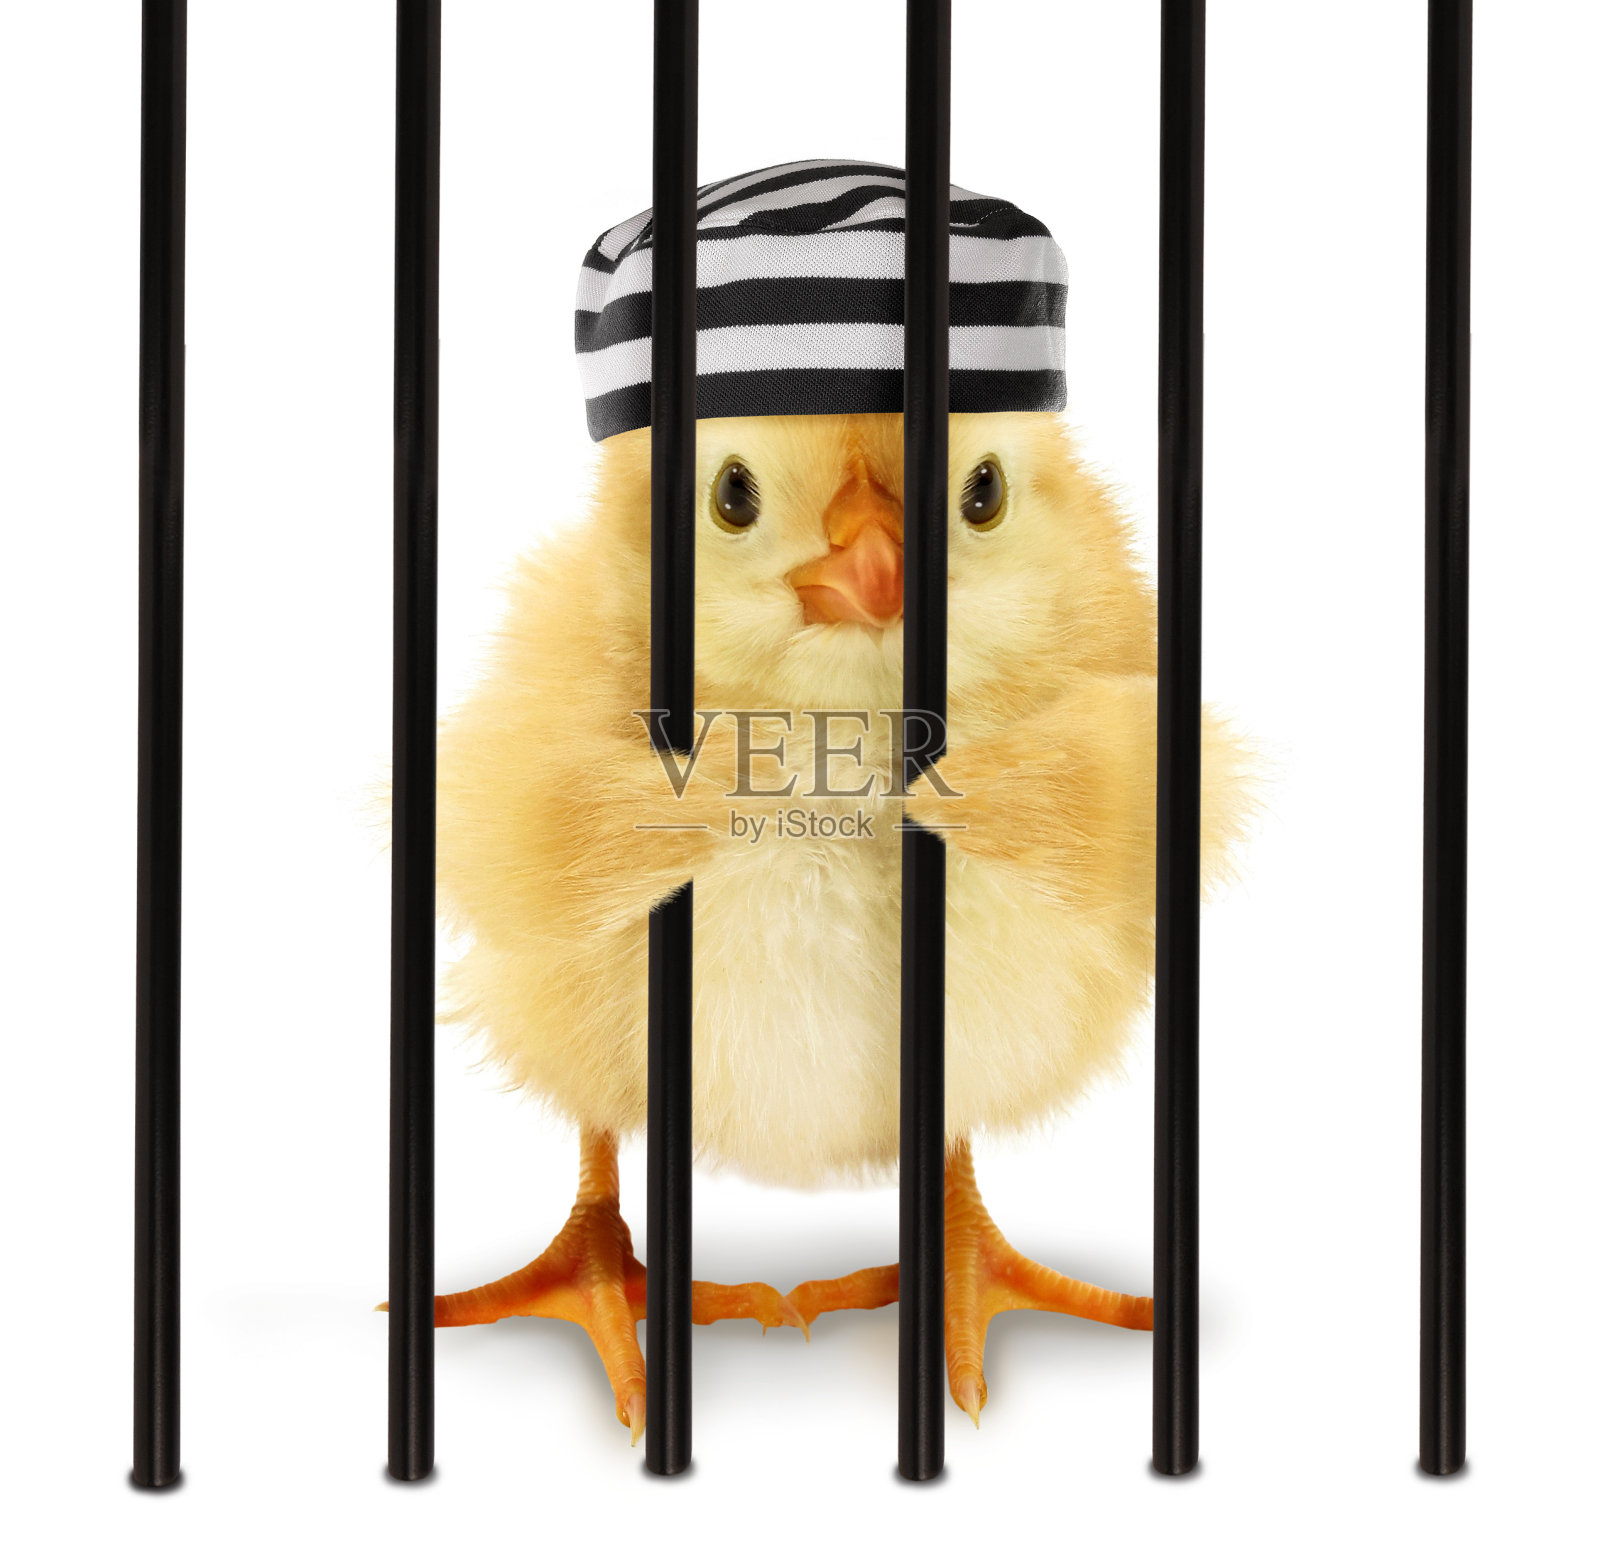 可爱酷的小鸡囚犯与条纹帽在笼子后的铁栏有趣的概念形象。有趣的小动物监狱概念照片摄影图片